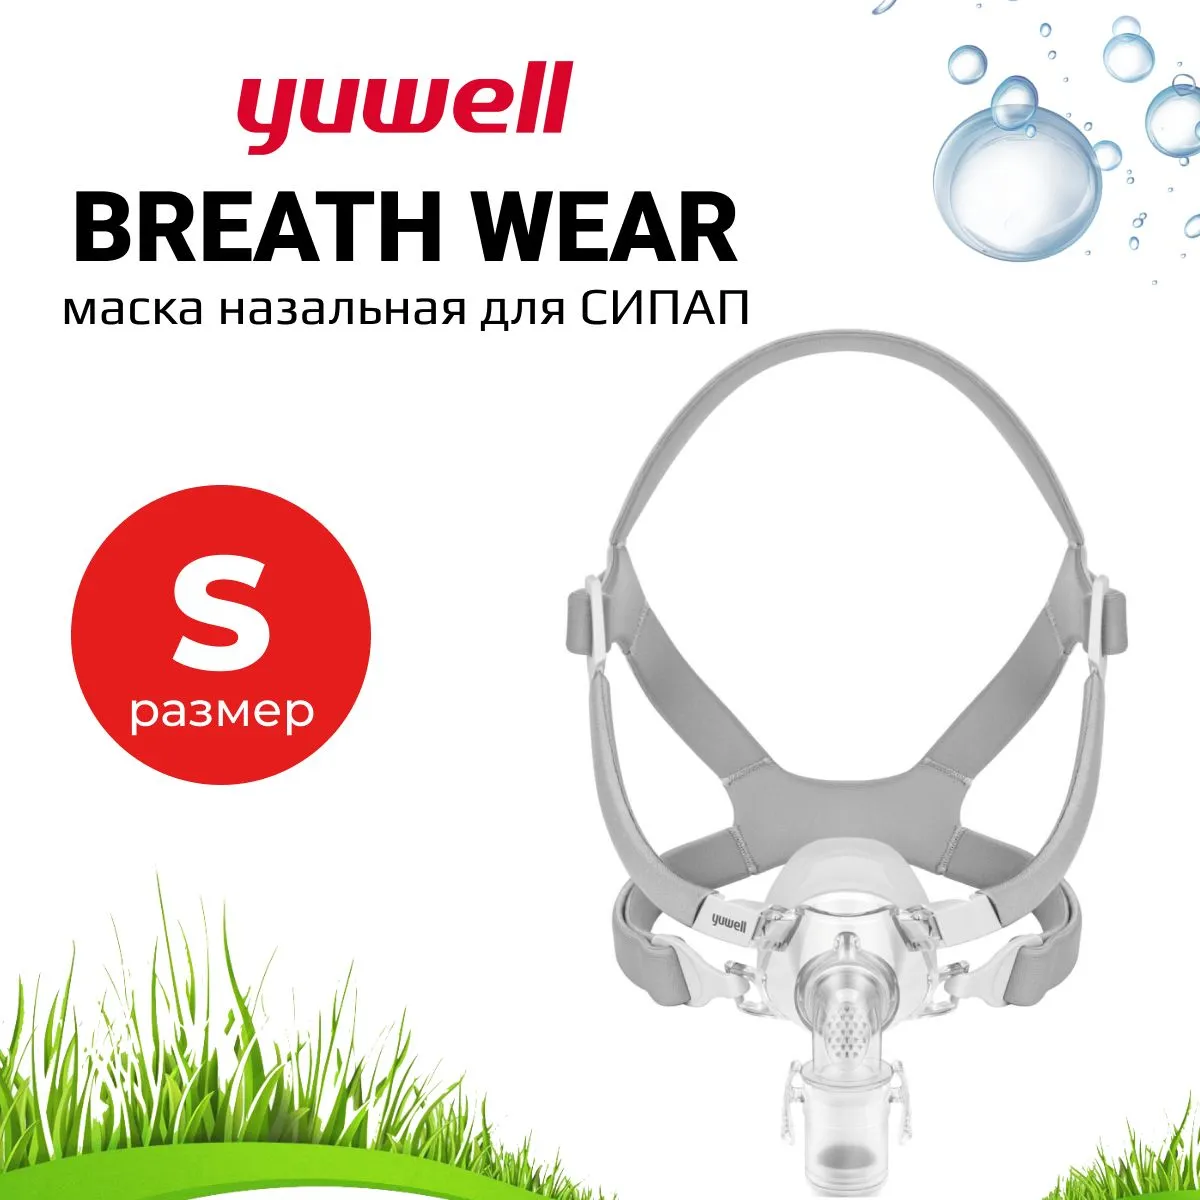 Назальная Маска Yuwell BreathWear Series YN-03 (Размер S) для СИПАП